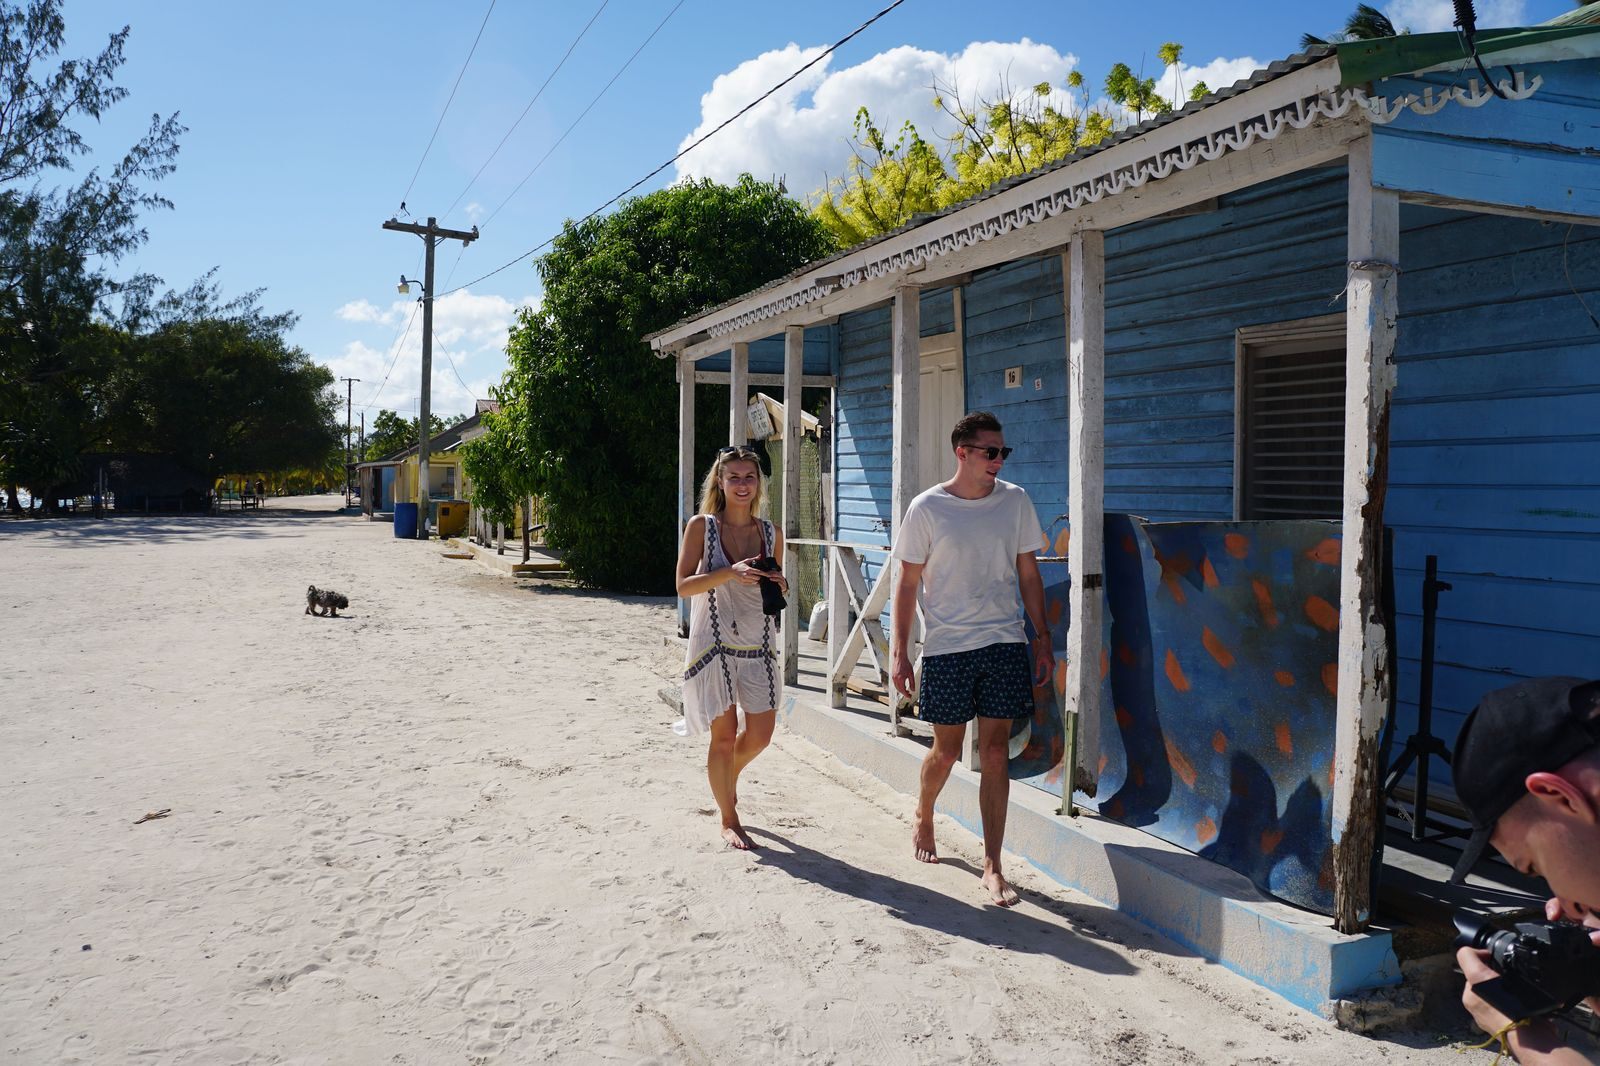 Find Us Lost recorren República Dominicana para recomendarte las mejores excursiones para tus vacaciones